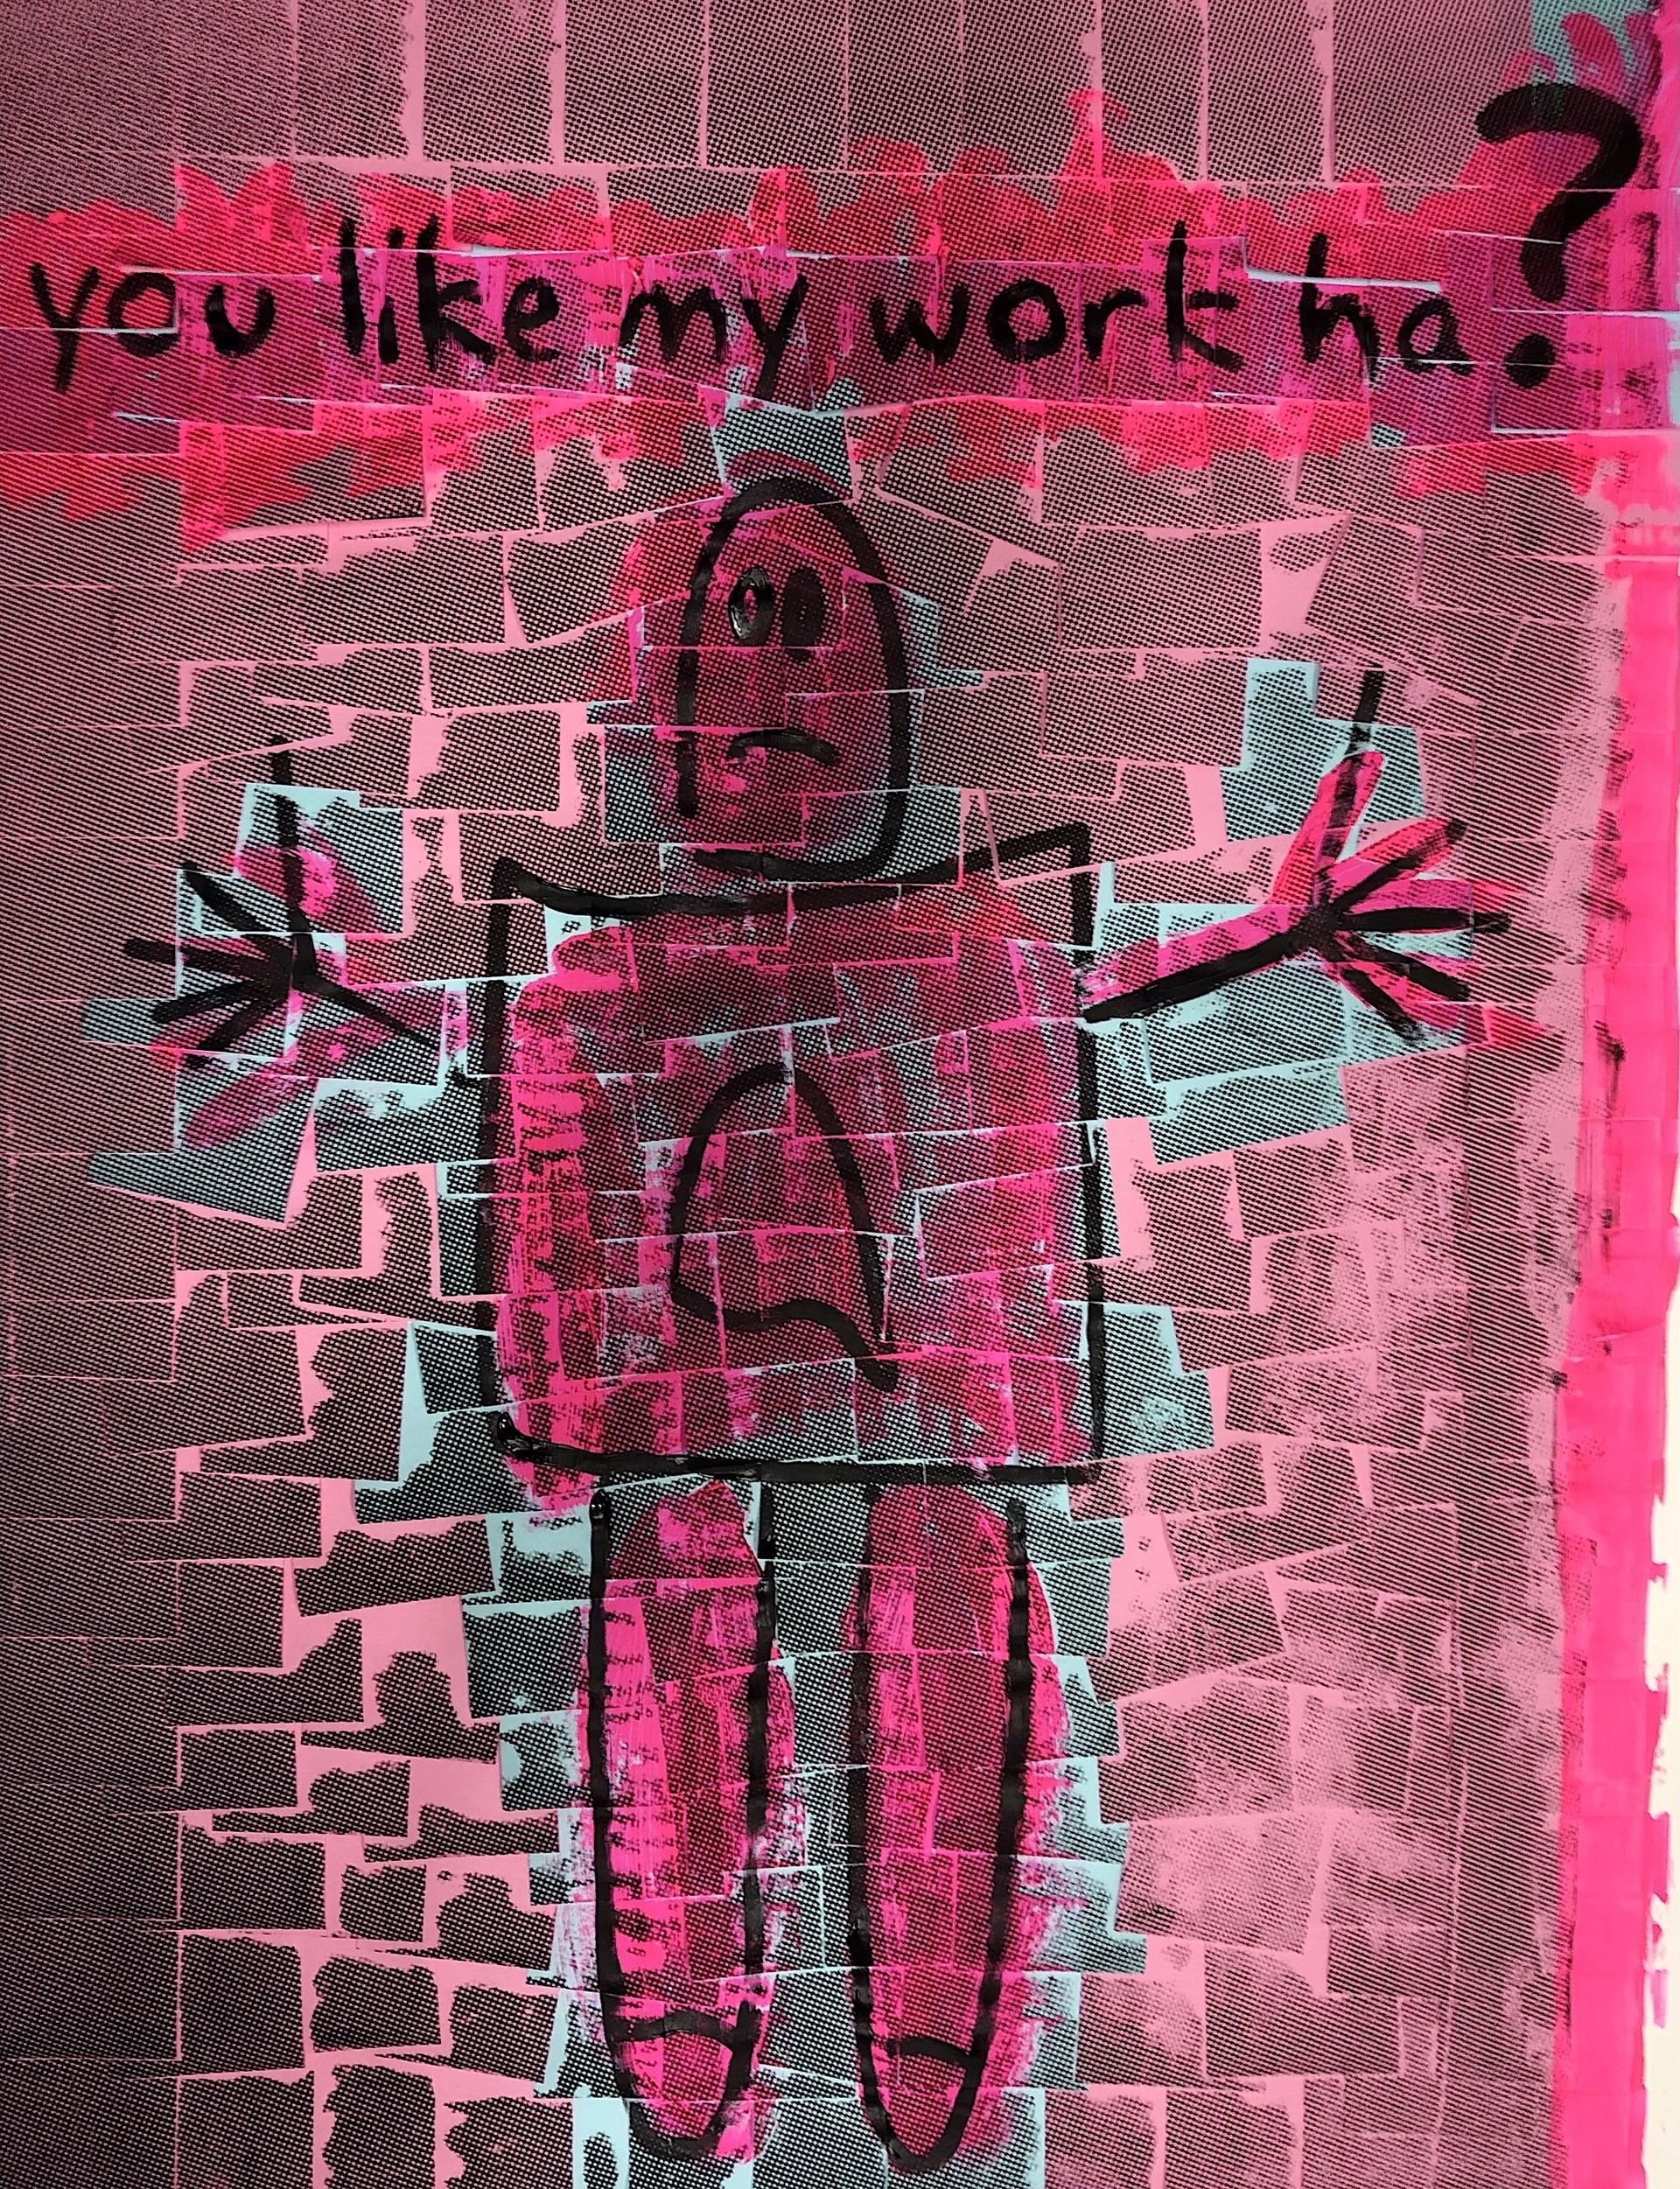 You like my work ha? (Pink) by Ardan Özmenoğlu